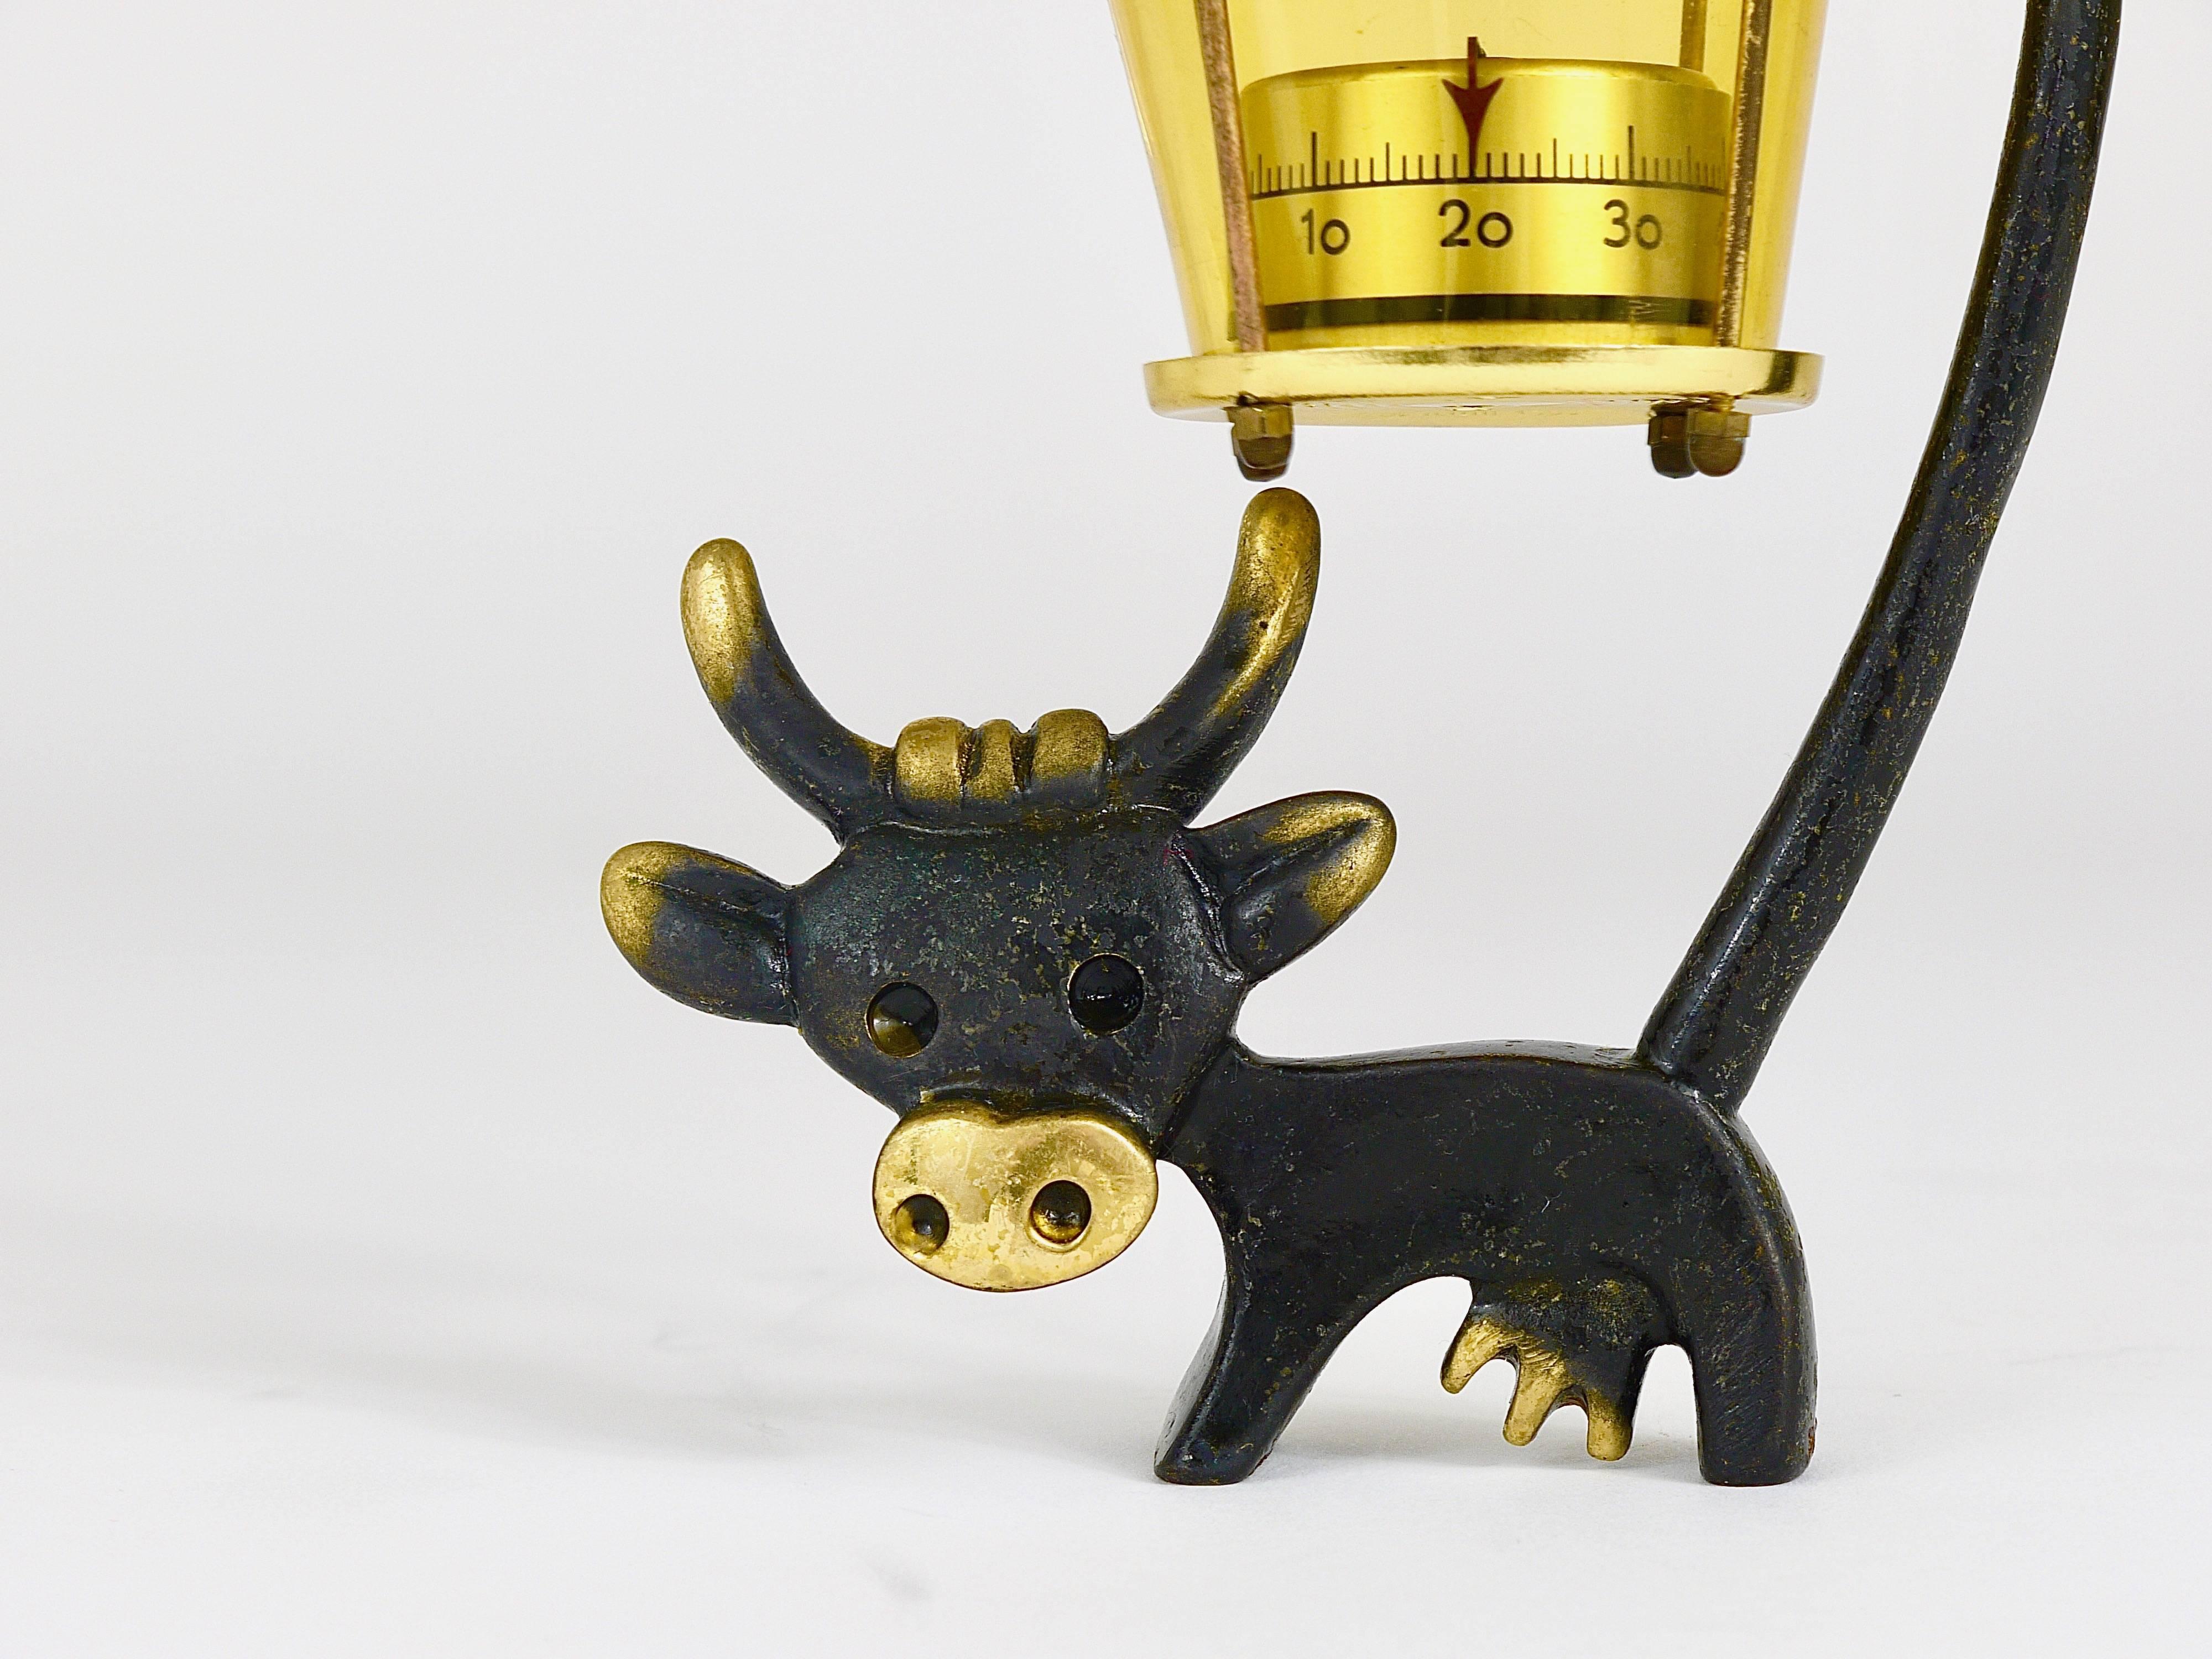 Charmant thermomètre de bureau autrichien, composé d'une jolie figurine de vache et d'un thermomètre en forme de lanterne. Un design humoristique de Walter Bosse, exécuté par Herta Baller Austria dans les années 1950. En laiton, en bon état avec une